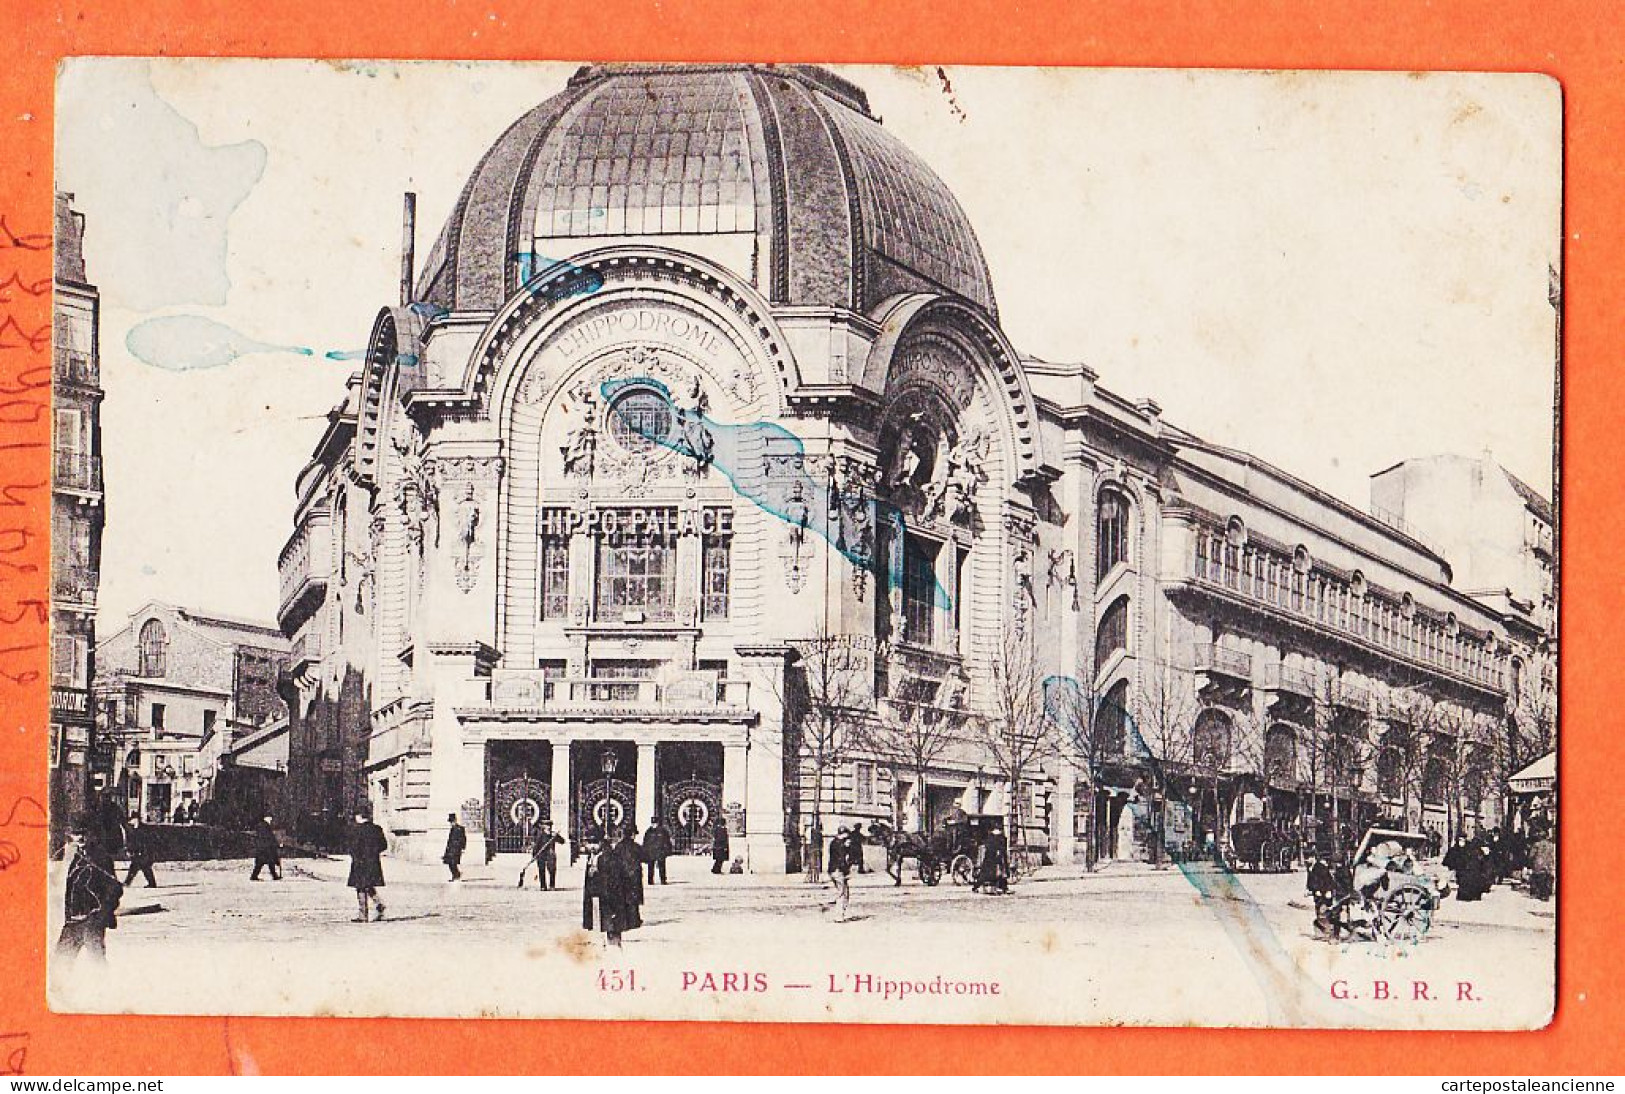 24282 /⭐ ◉  PARIS XVIII Salle Spectacle Hippodrome HIPPO-PALACE ◉ 1918 à Theophil BOUF Instituteur Crion ◉ G.B.R.R 451 - Arrondissement: 18